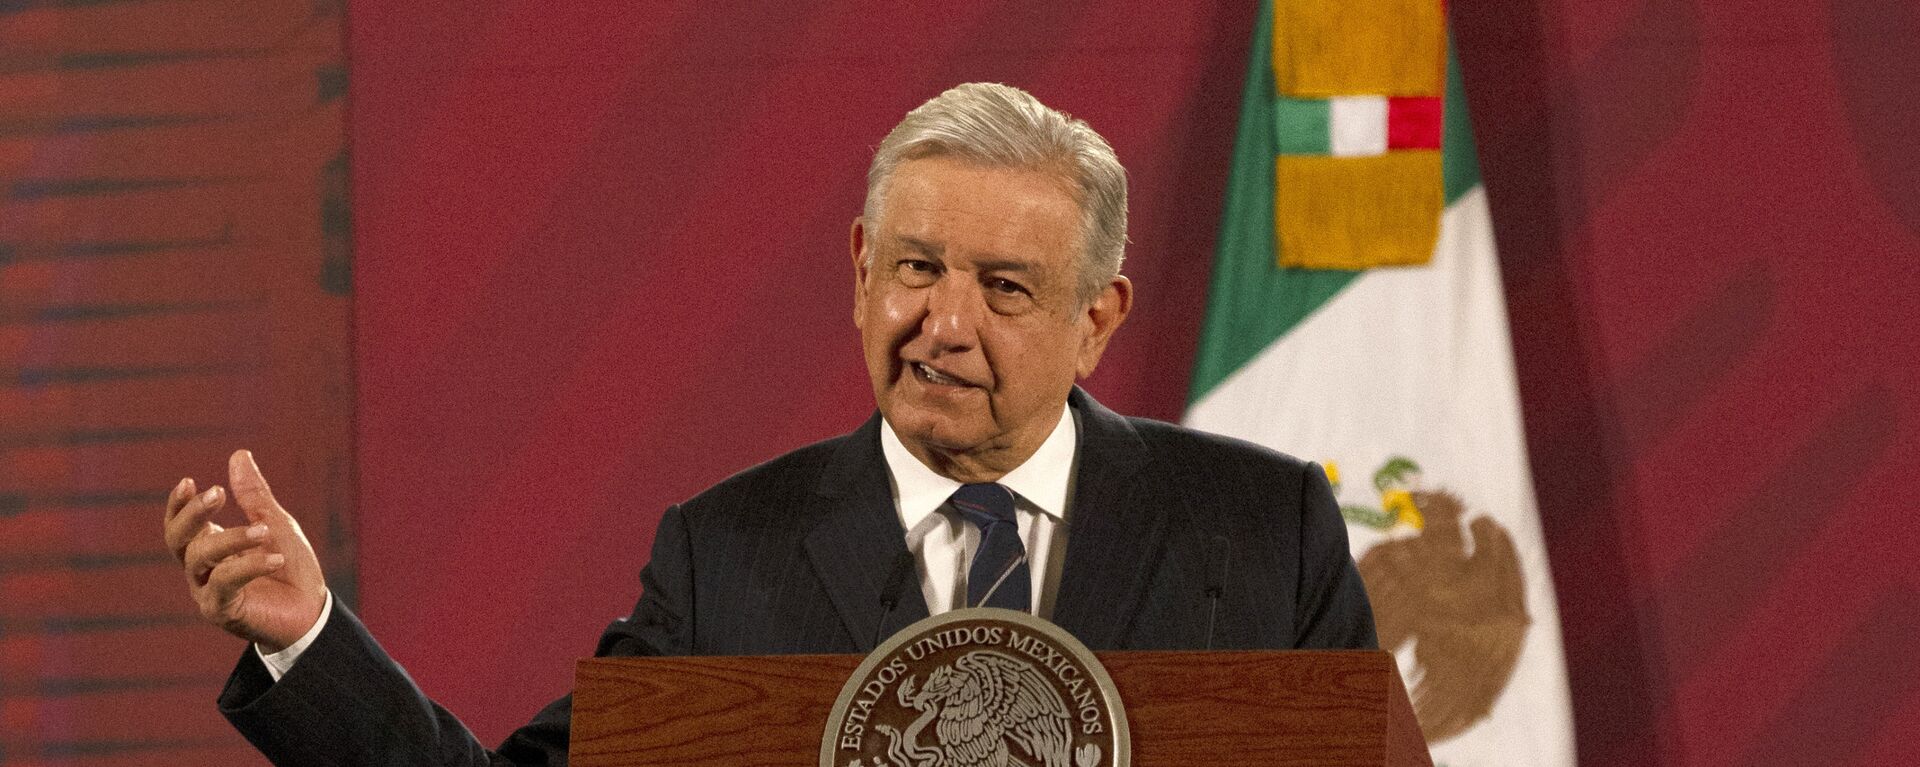 Andrés Manuel López Obrador, presidente de México - Sputnik Mundo, 1920, 15.04.2021